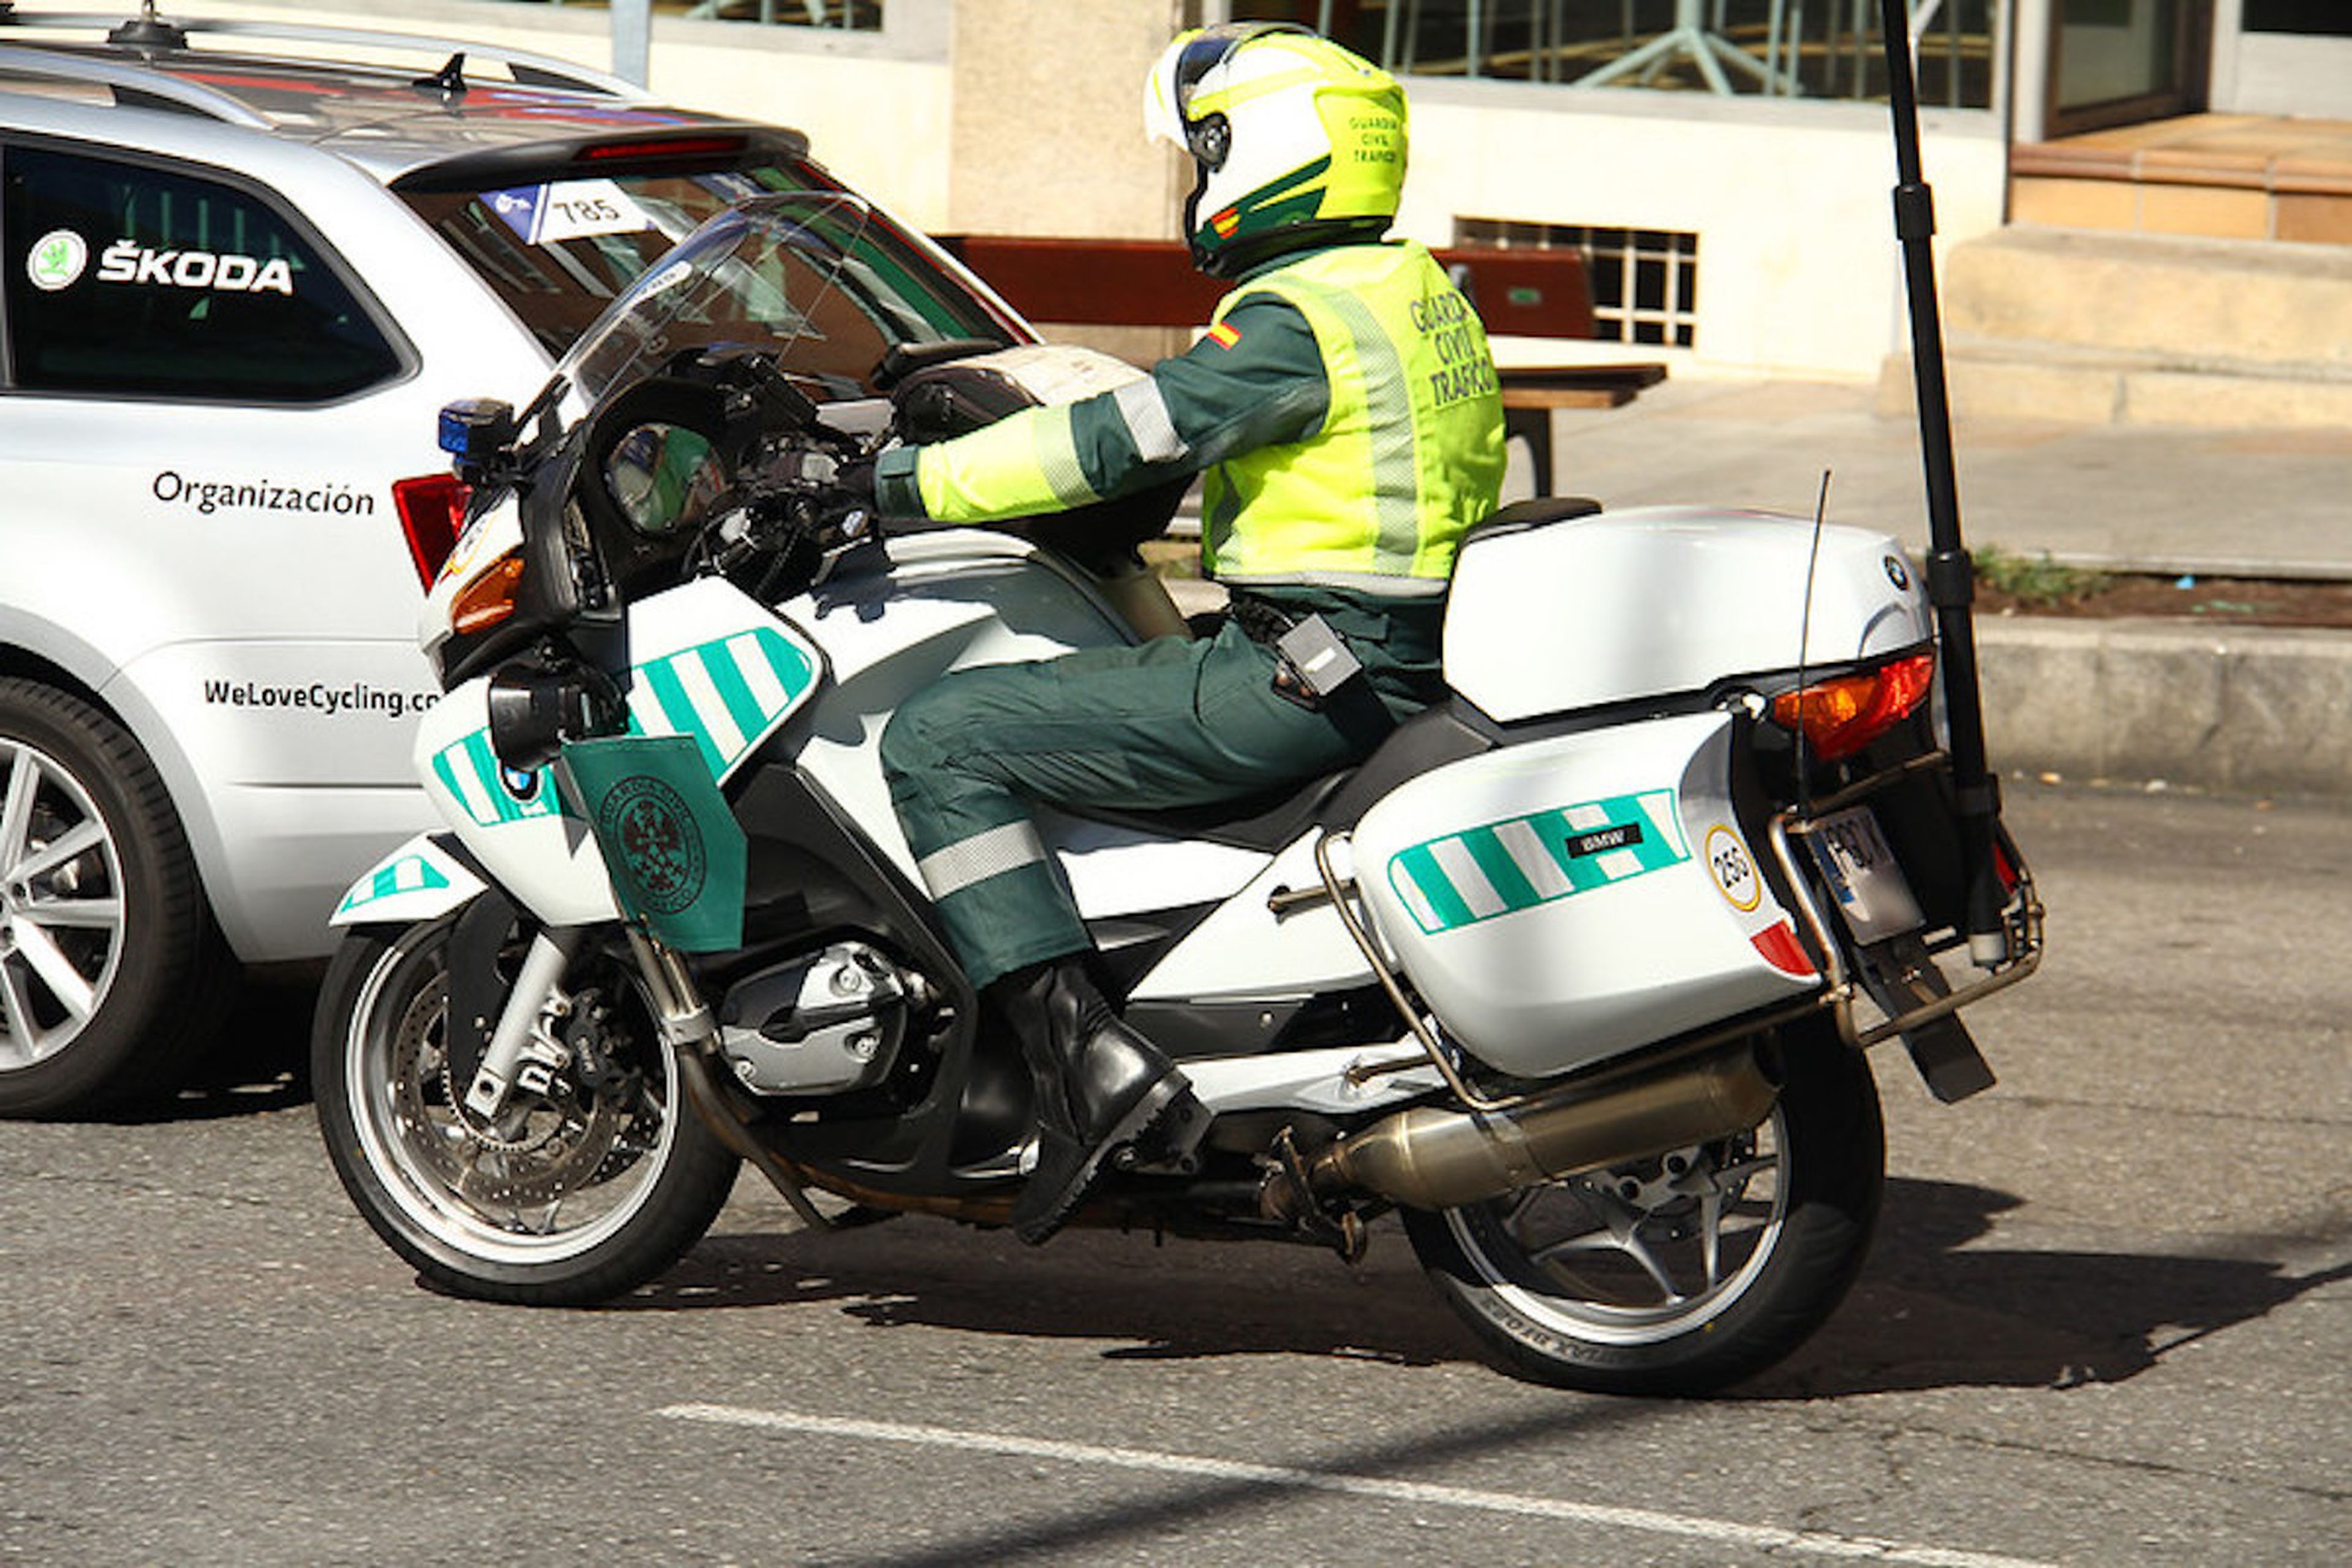 Moto Guardia Civil con bandera verde